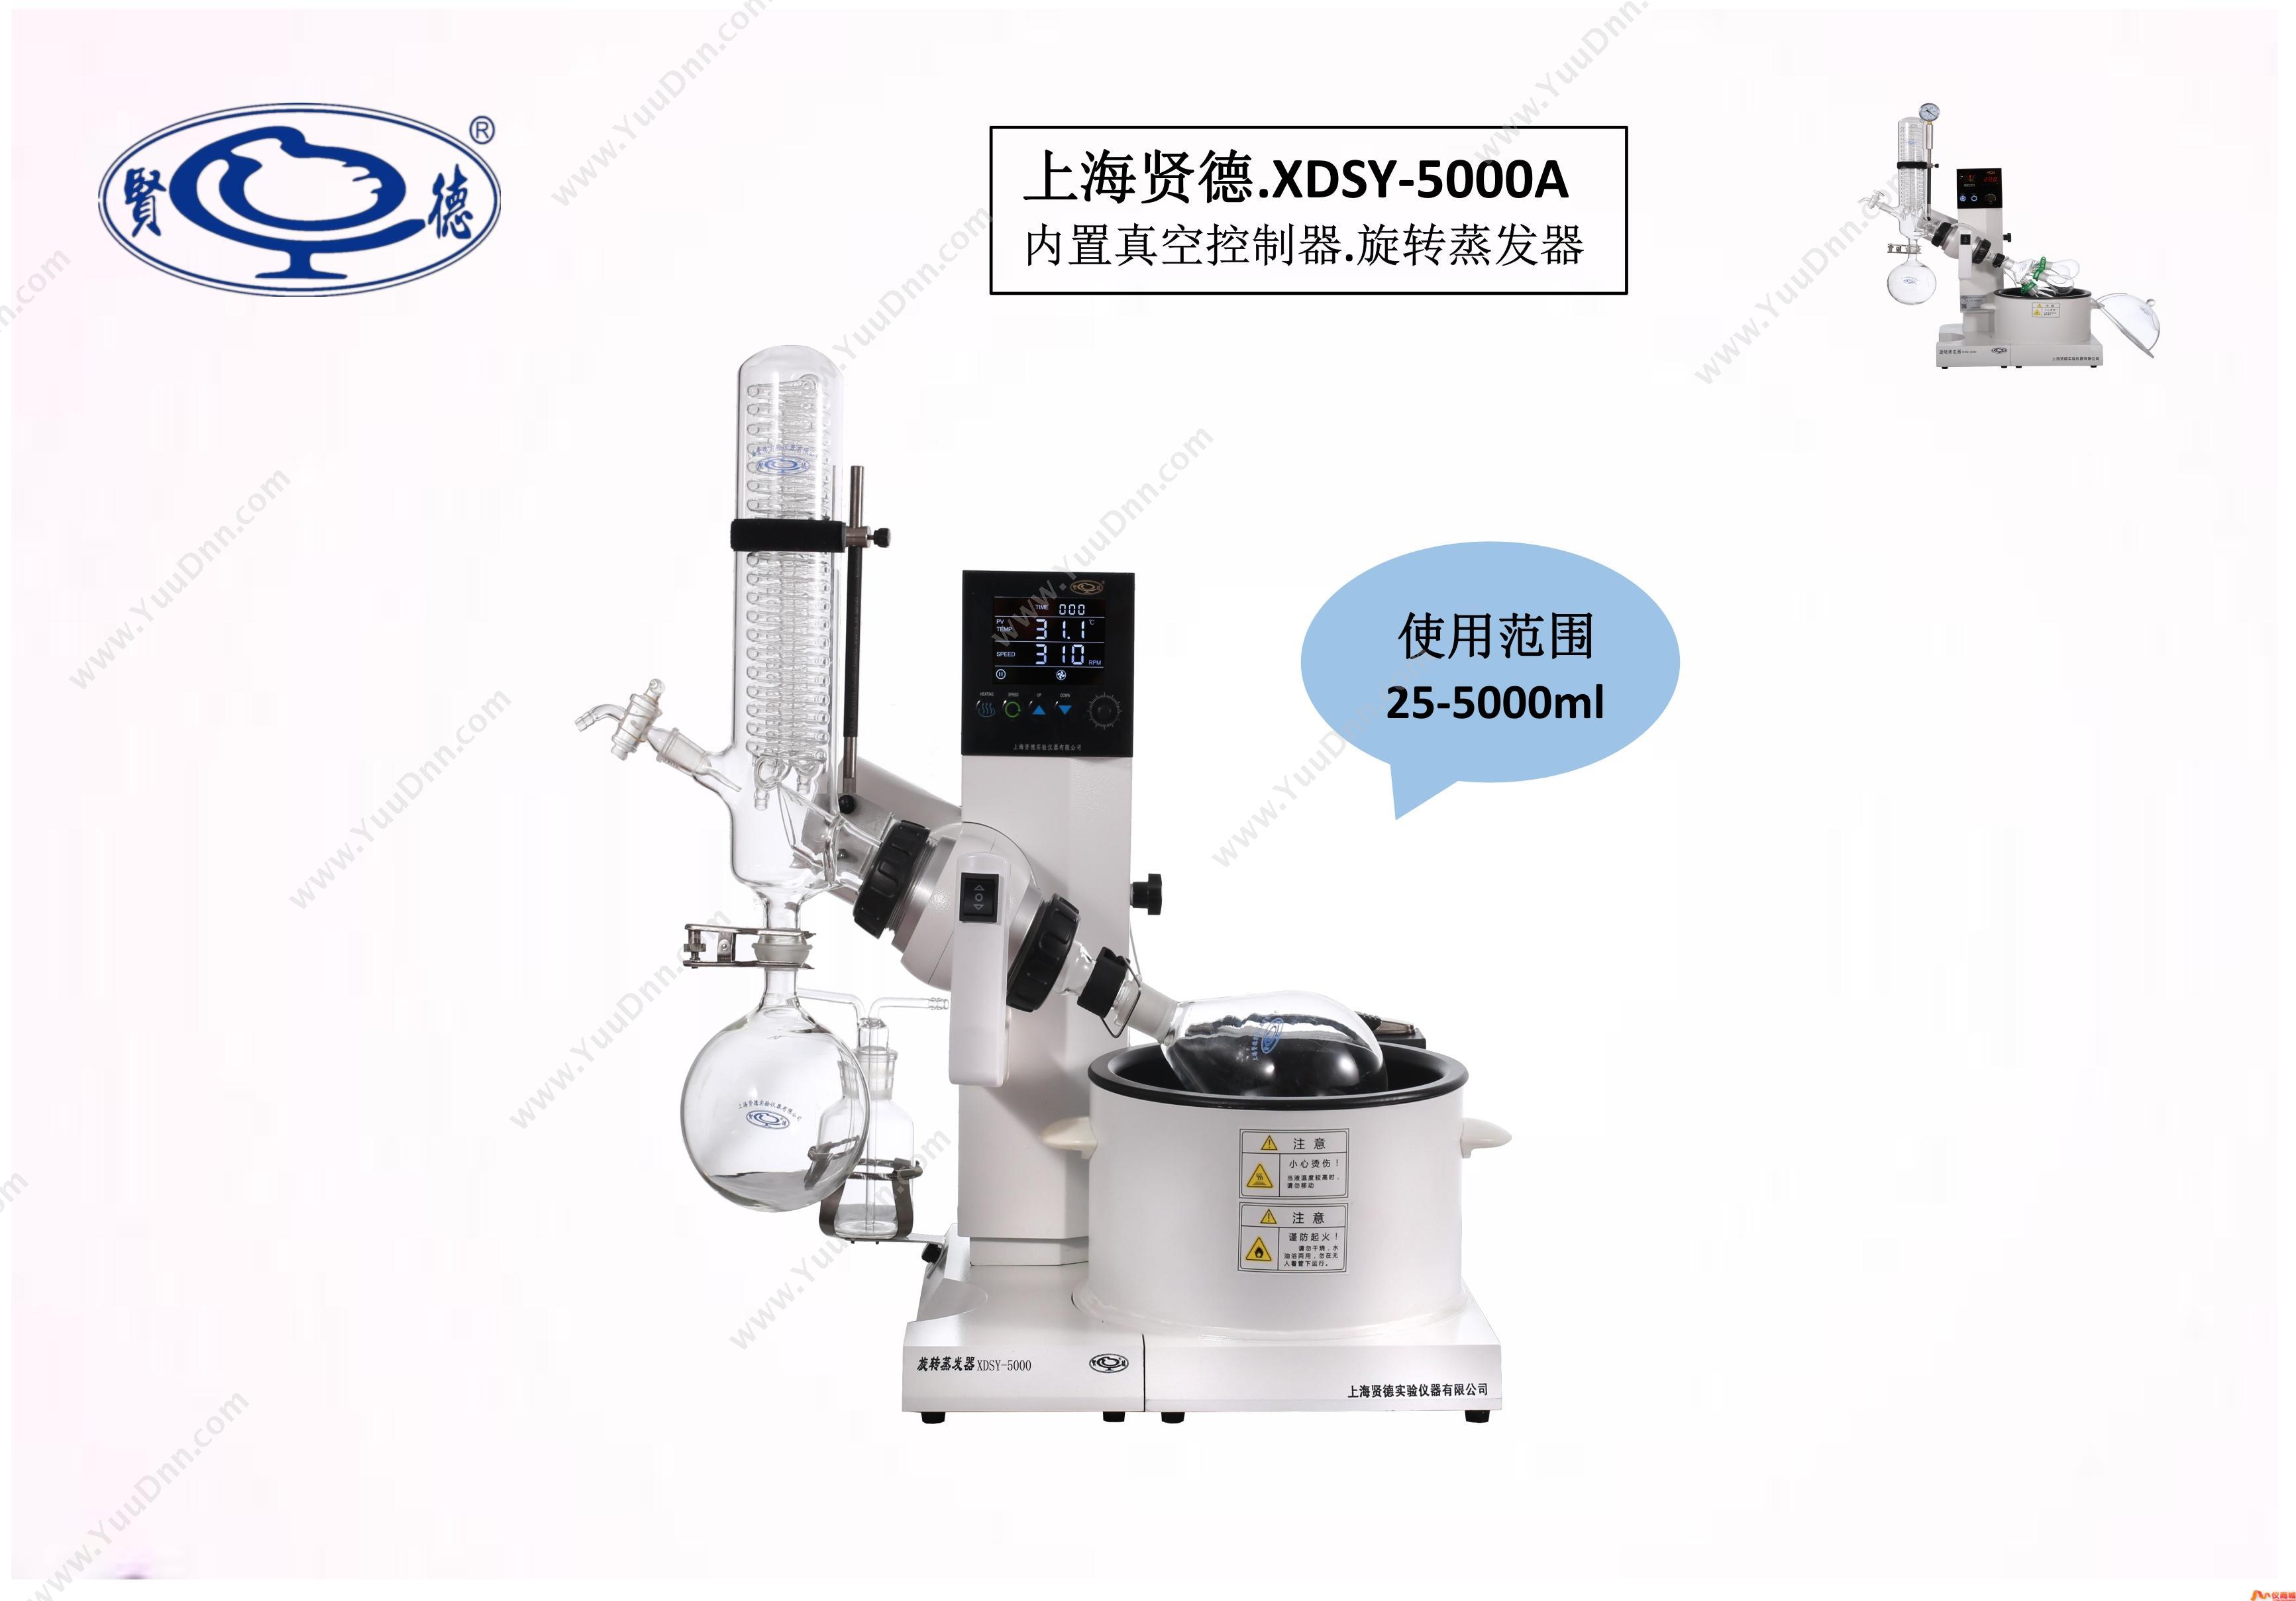 贤德XDSY-5000A(5L)大屏幕液晶显示旋转蒸发器